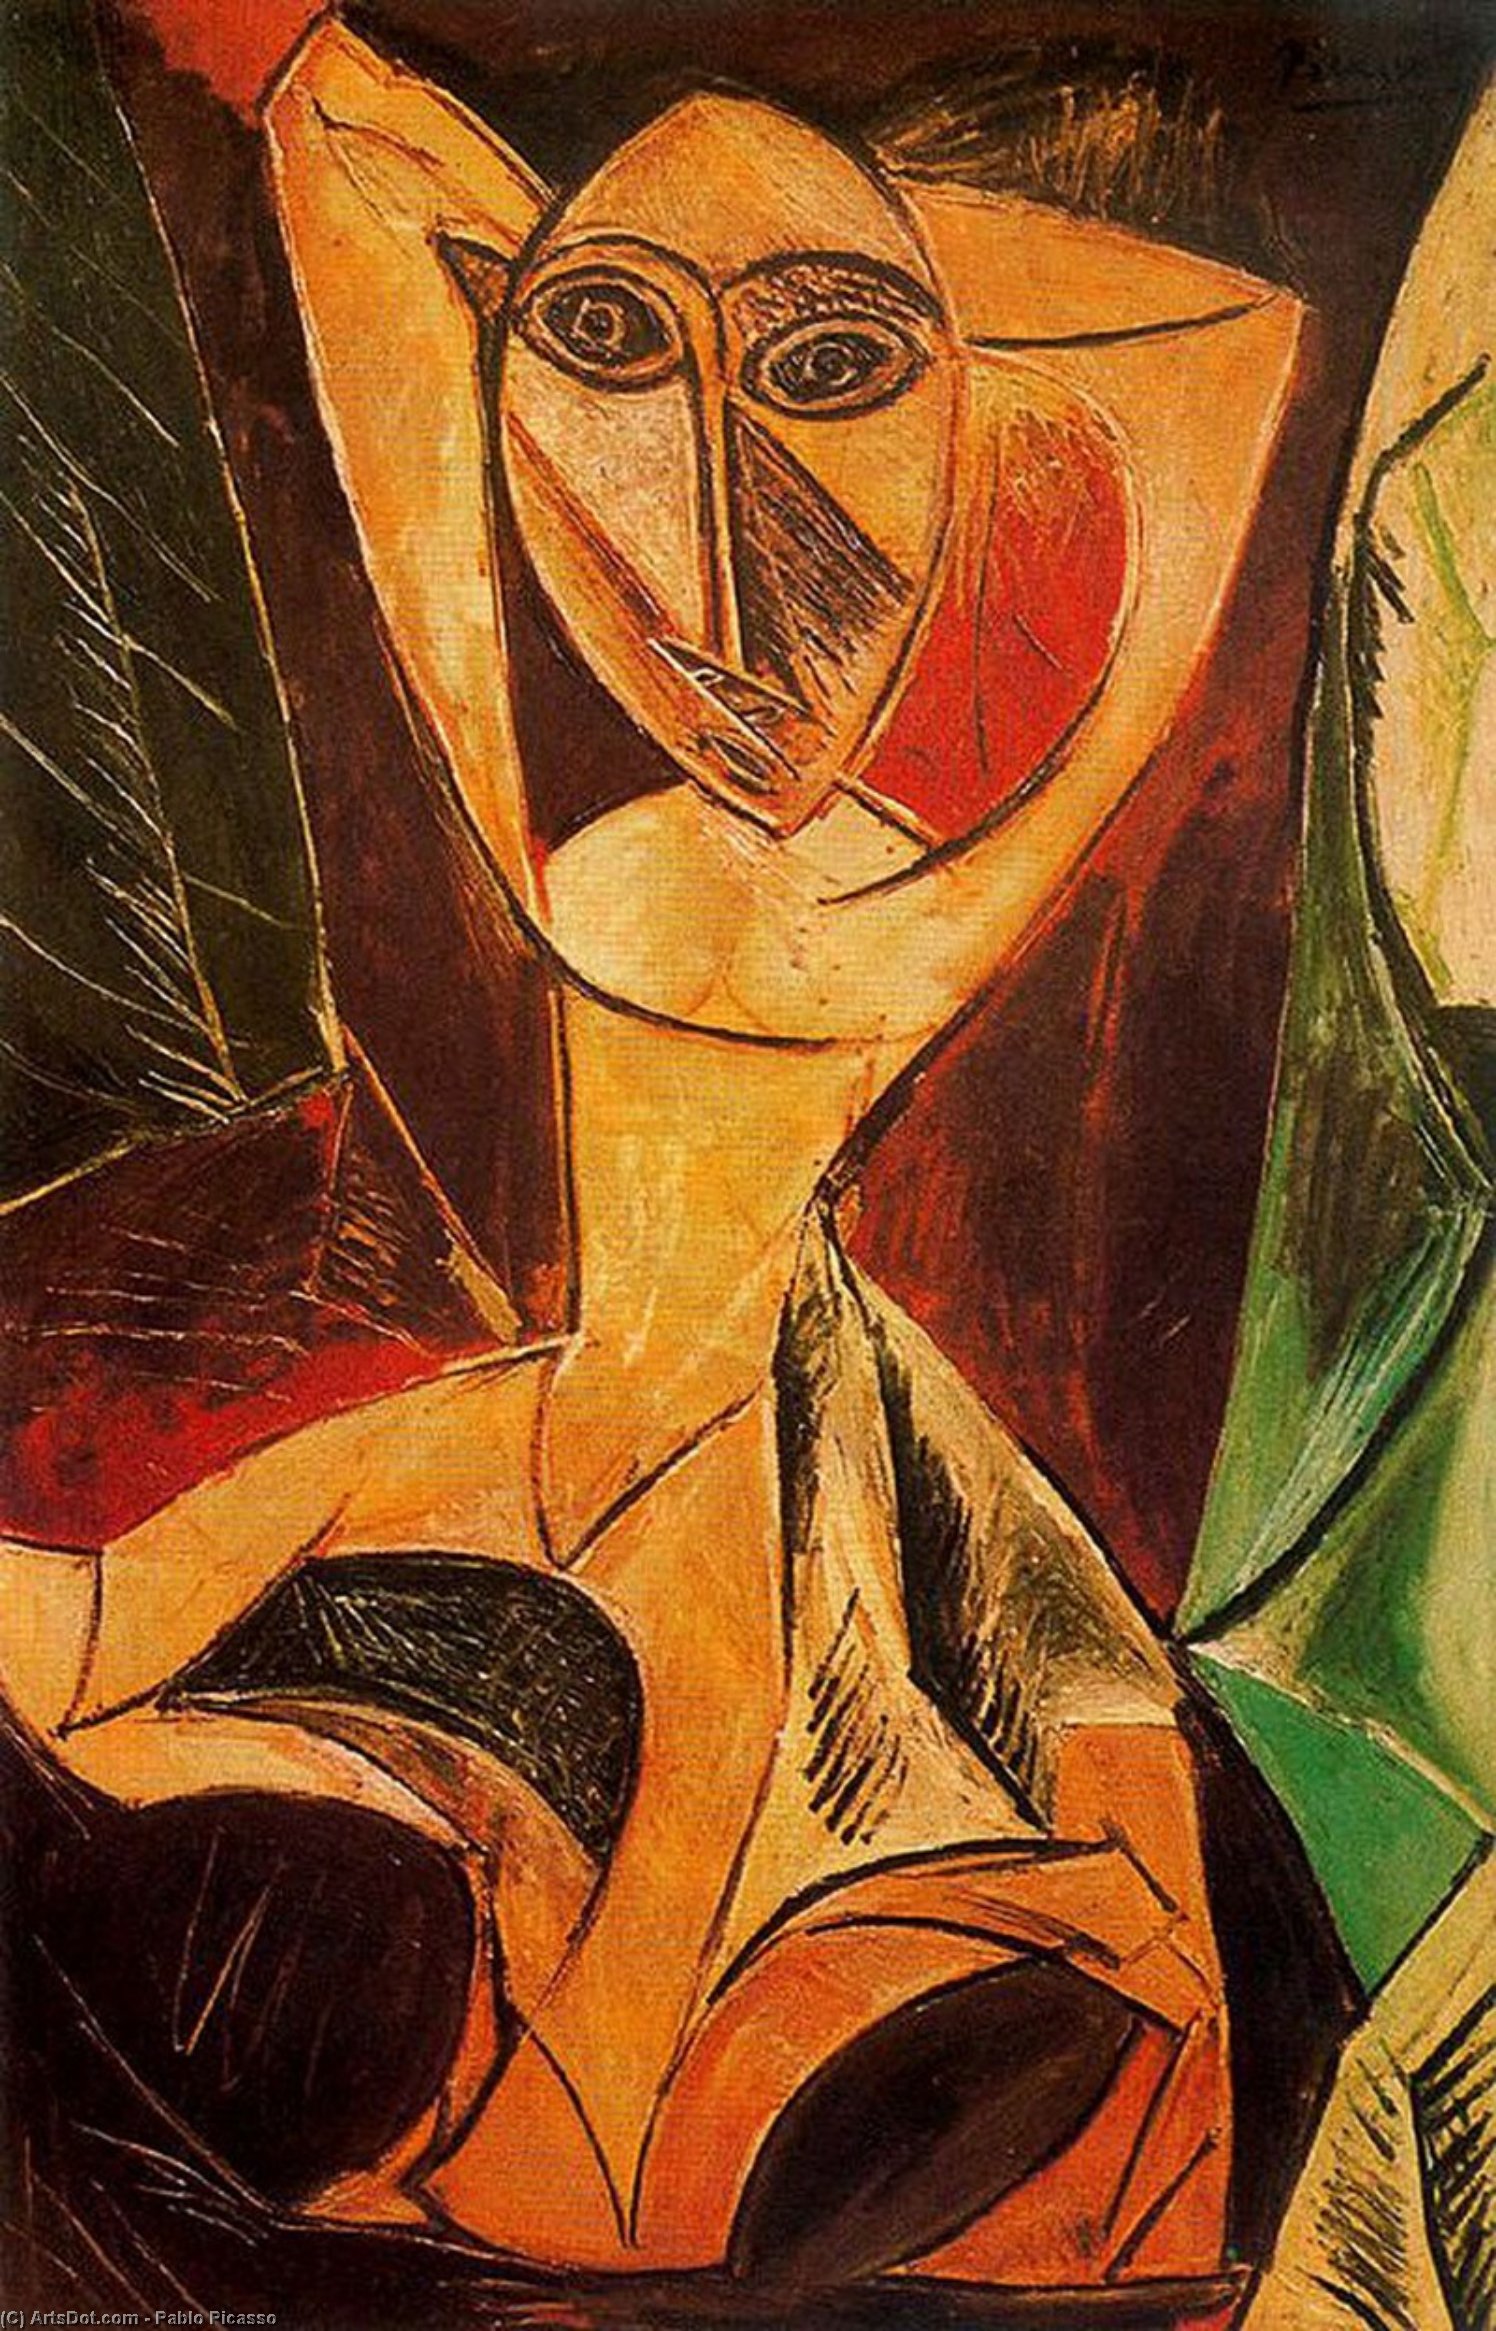 WikiOO.org - Enciklopedija dailės - Tapyba, meno kuriniai Pablo Picasso - Nude with raised arms (The Avignon dancer)